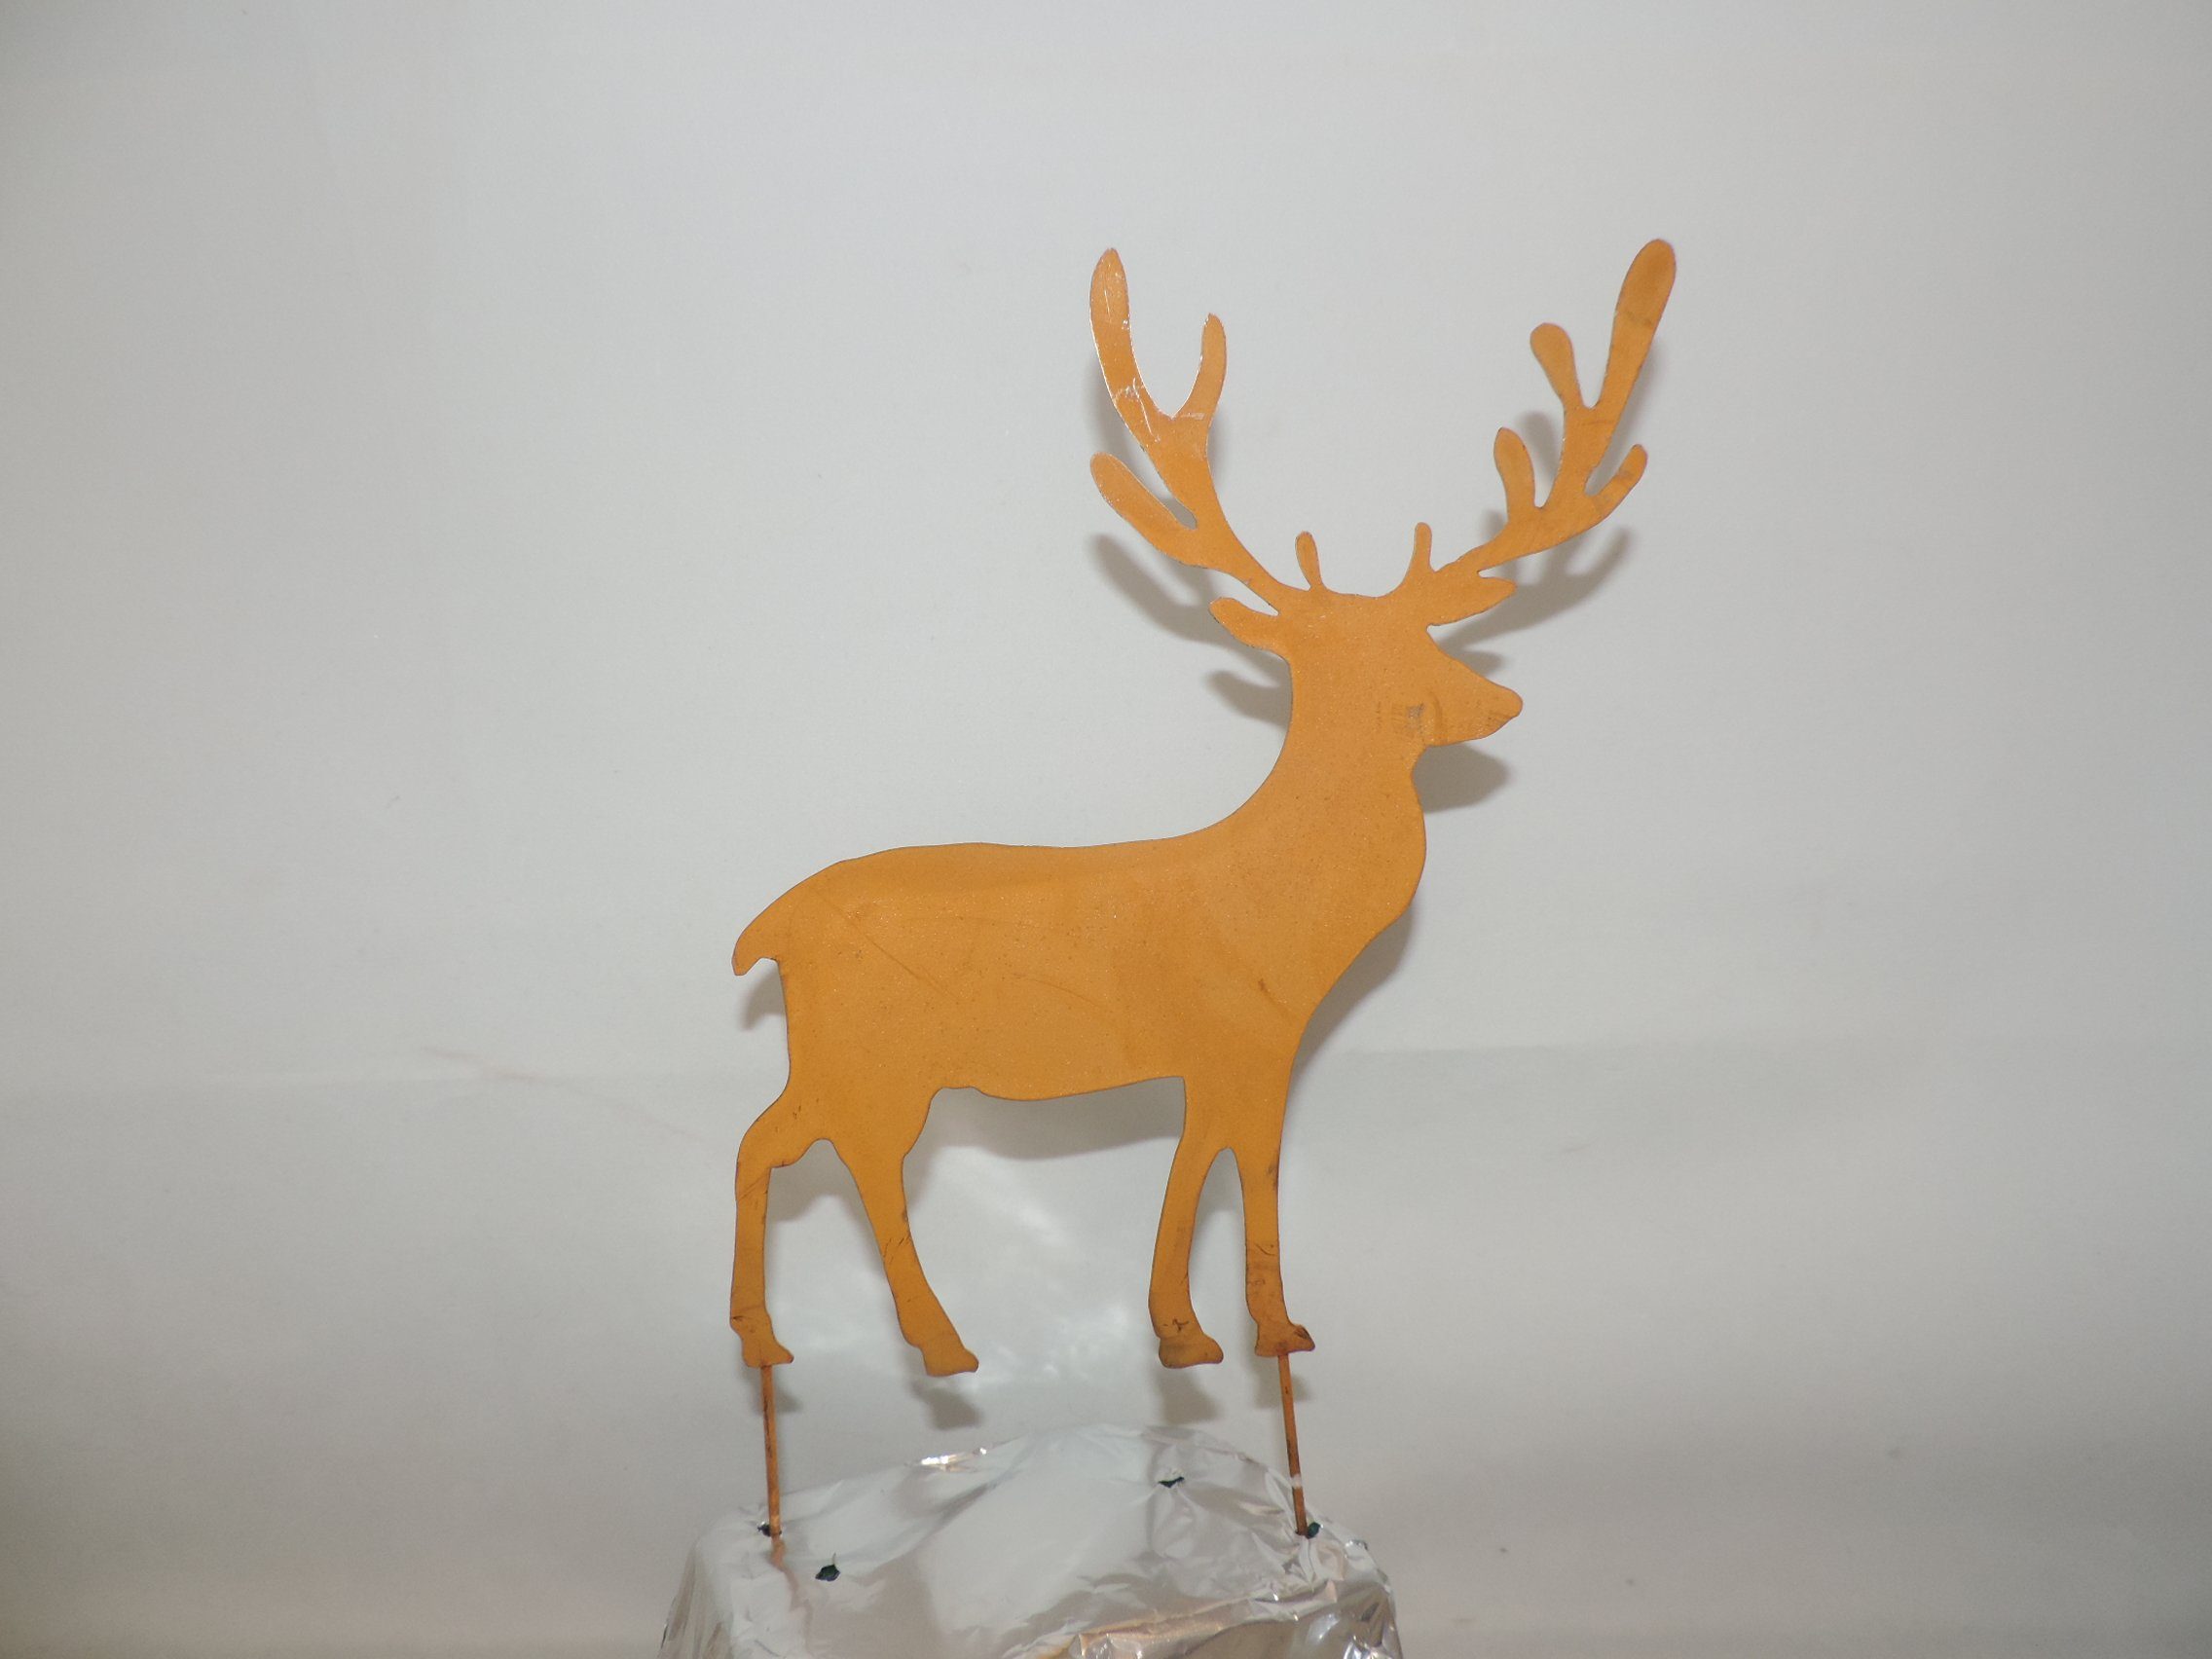 Dragimex Weihnachtsfigur Hirsch Figur rost mit Herbstdeko 2 Bodenstecker